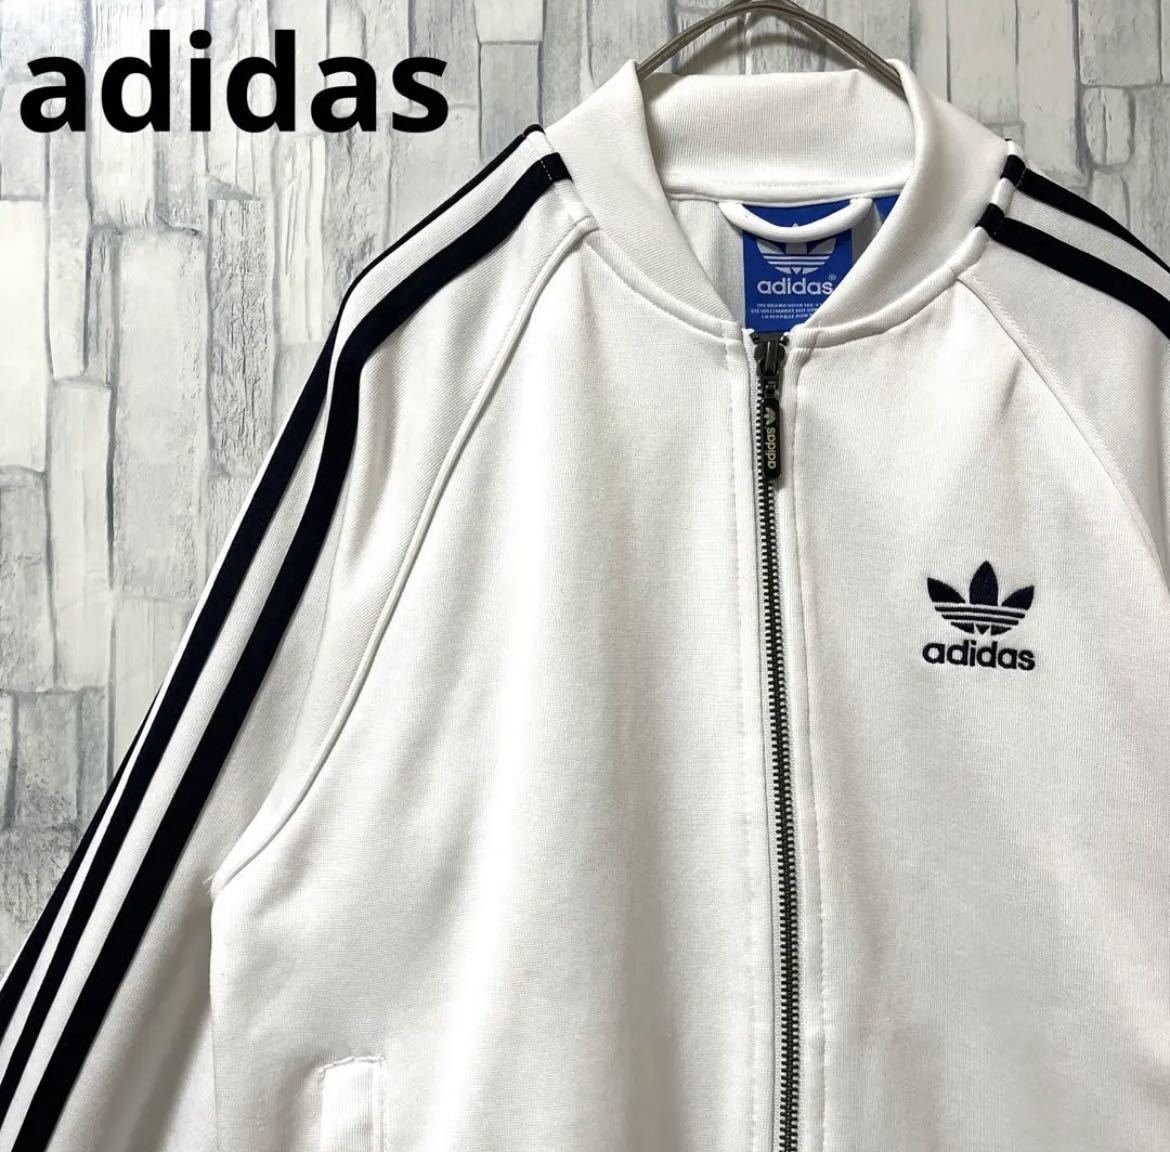 adidas Adidas джерси сверху спортивная куртка S ATP модель белый to зеркальный . il длинный рукав 3 линия 3 полоса вышивка Logo бесплатная доставка 